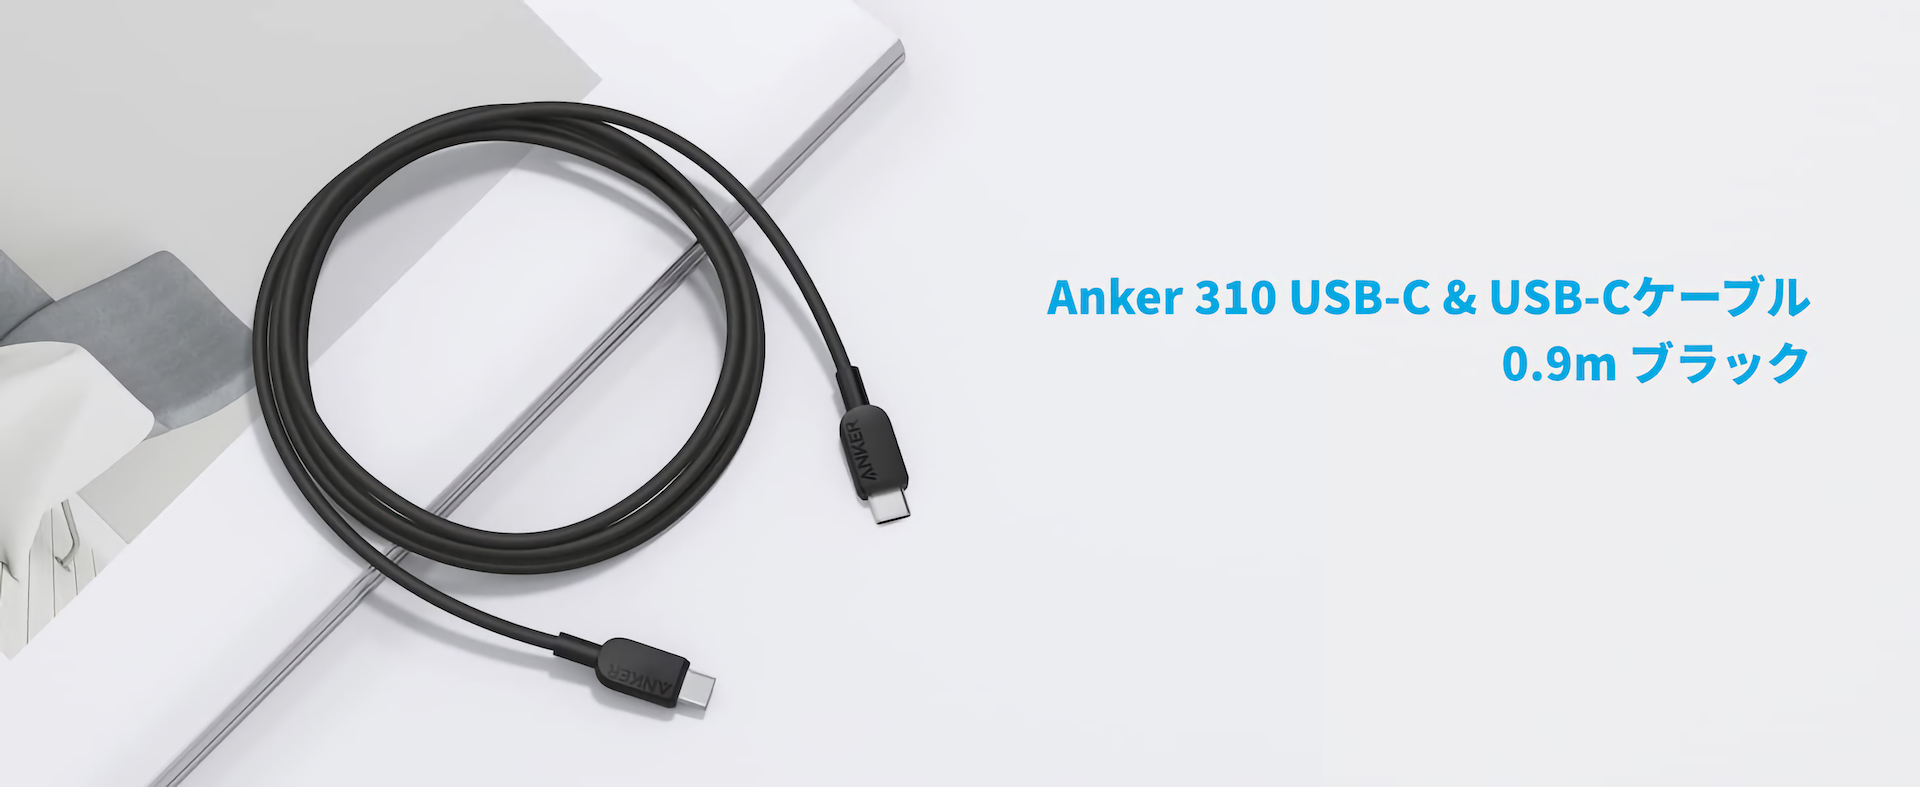 Anker 310 USB-C & USB-C ケーブル